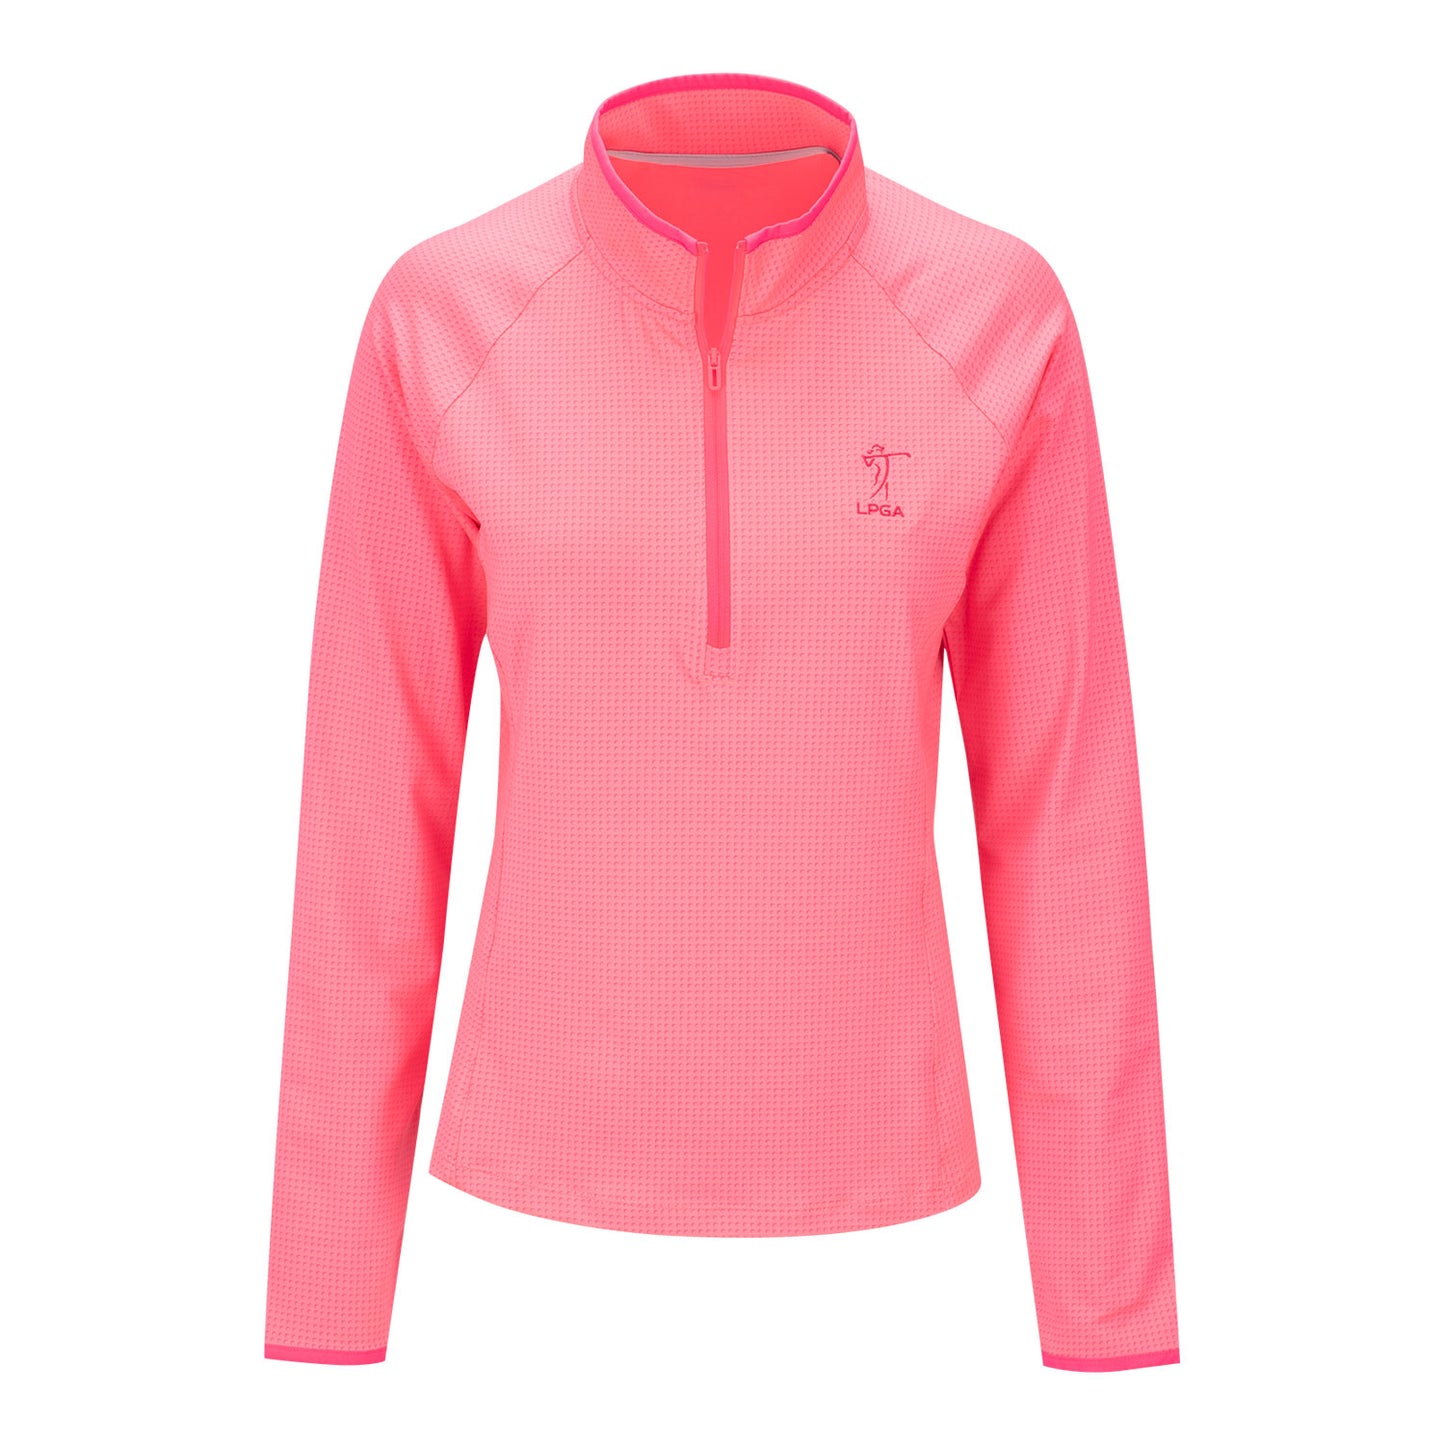 Under Armour 2023 LPGA Women's Half Moons Quarter Zip in Pink - Front View